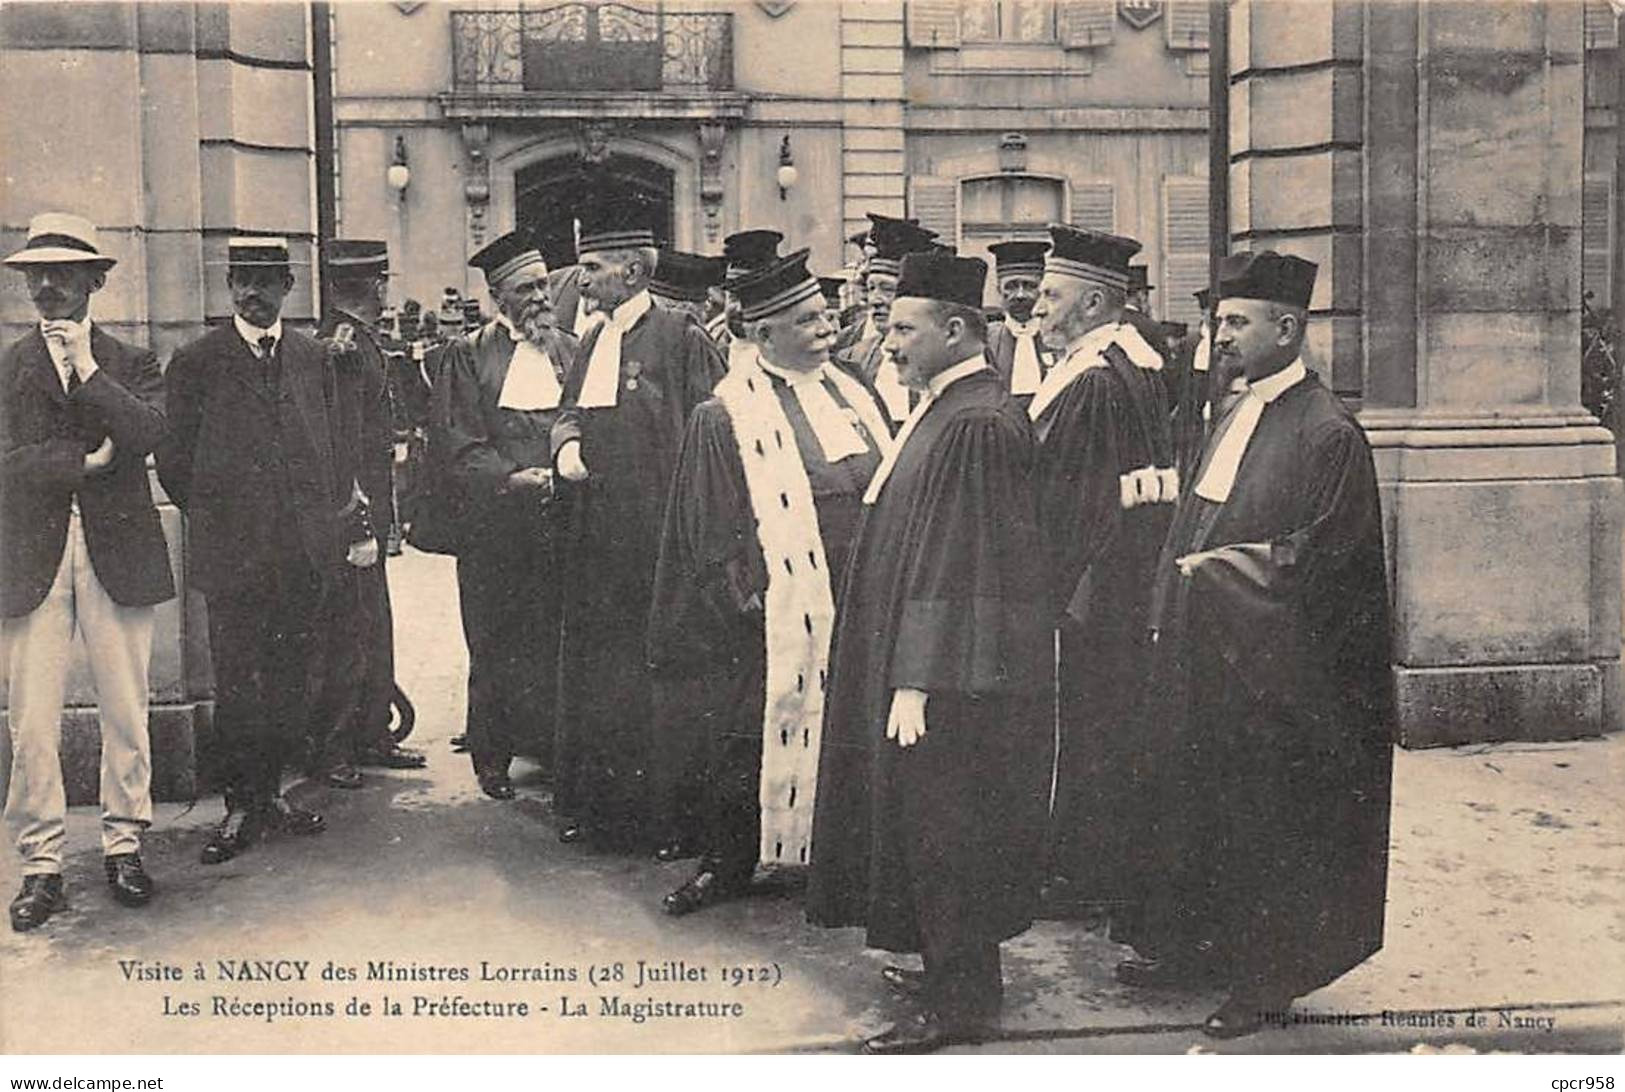 54 - NANCY-SAN37540 - Visite Des Ministres Lorrains - Les Réceptions De La Préfecture - 28 Juillet 1912 - Nancy